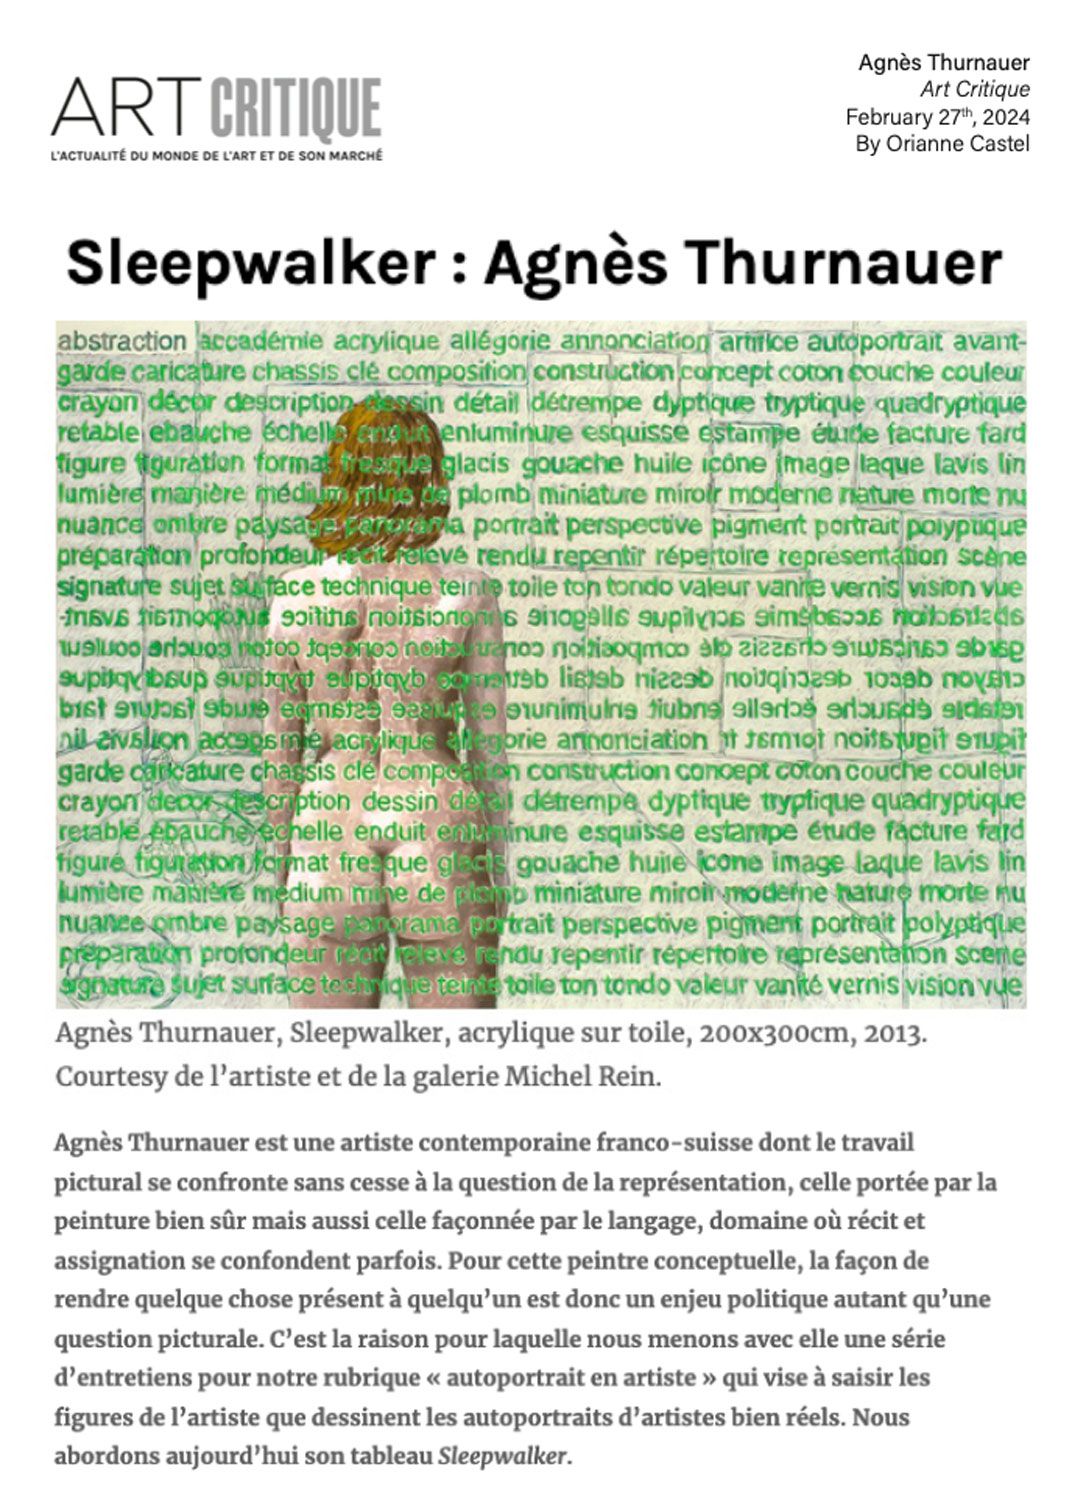 Sleepwalker : Agnès Thurnauer - Art Critique 